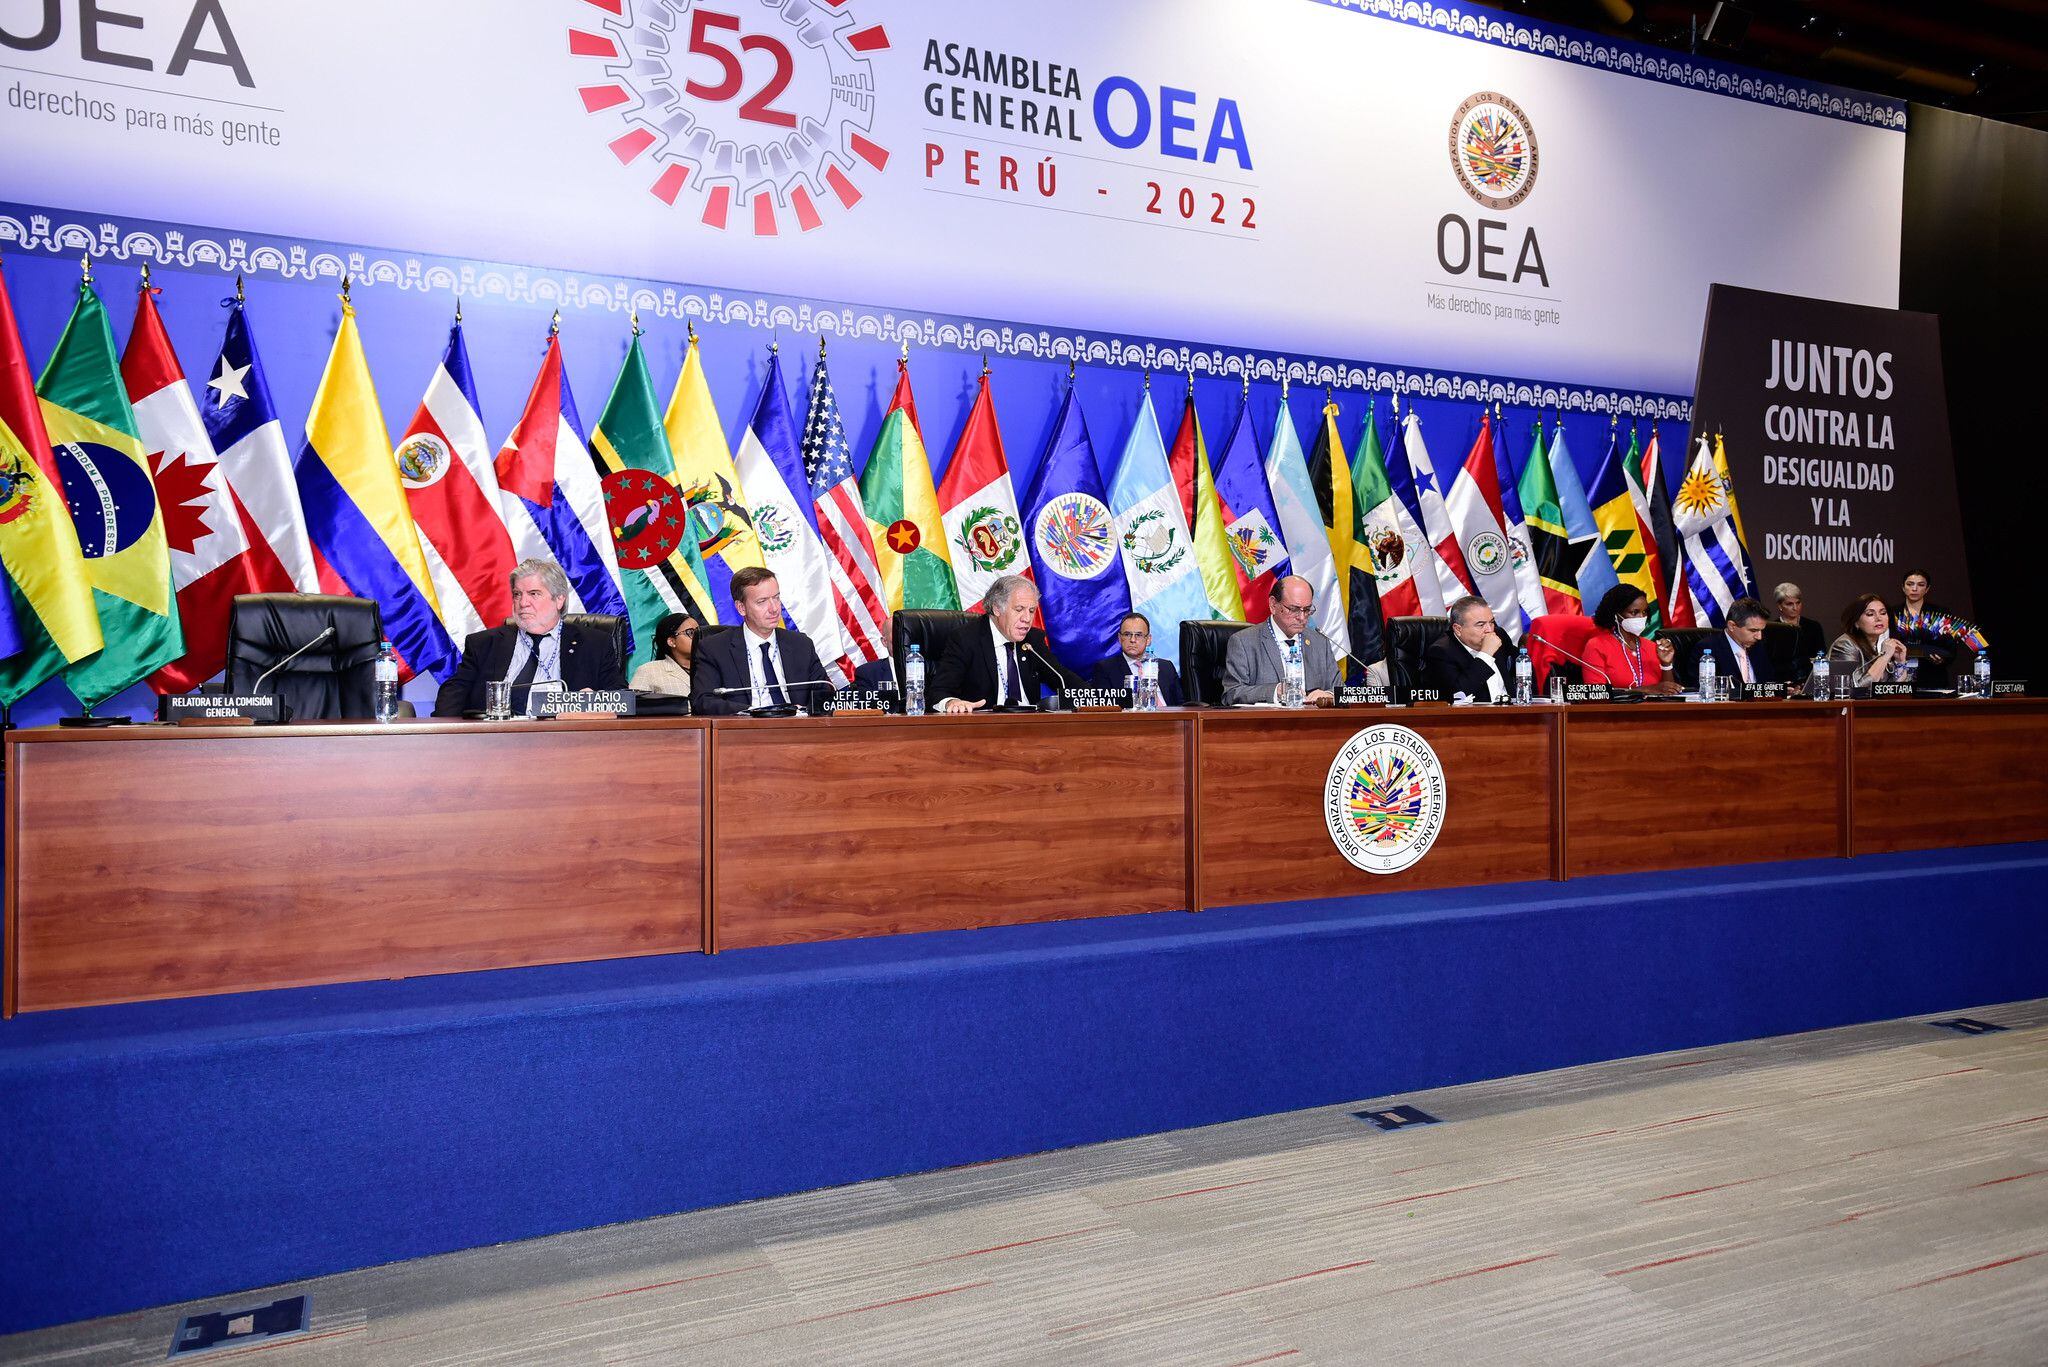 La Asamblea General de la Organización sesionó en Lima, de manera presencial, por primera vez desde 2019.